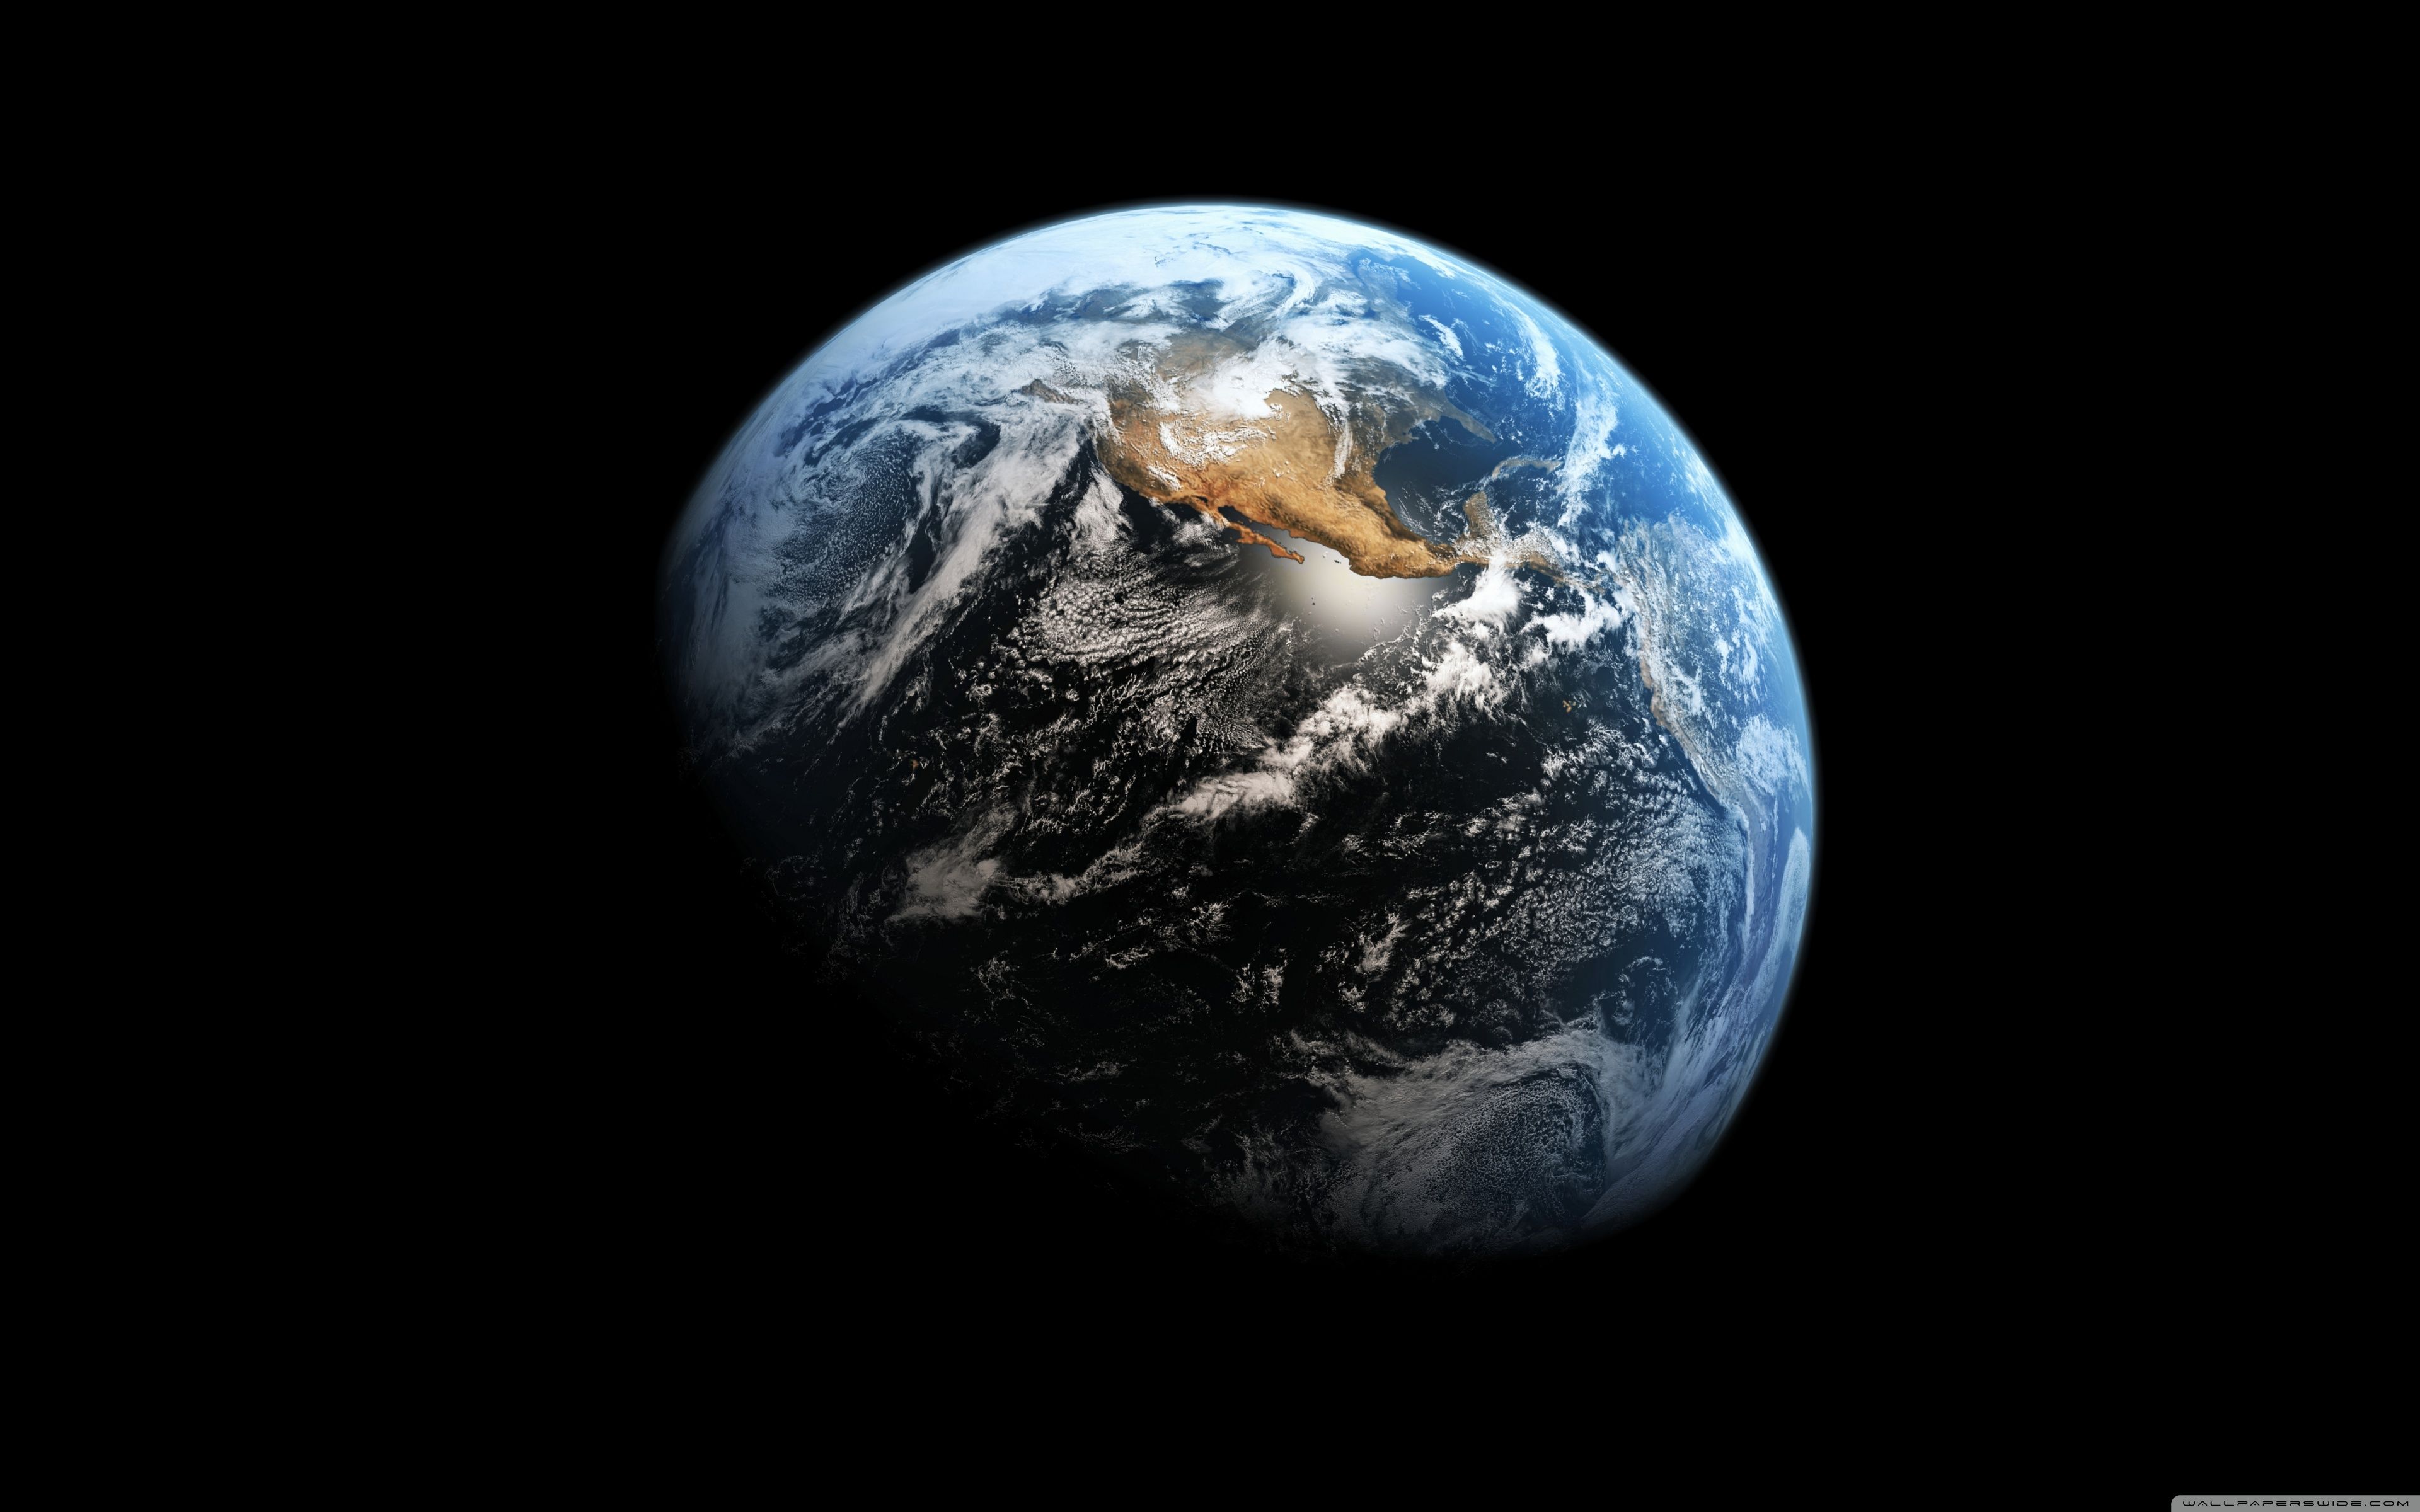 Earth in the black background 4K HD desktop wallpaper for 4K Ultra HD TV - Earth